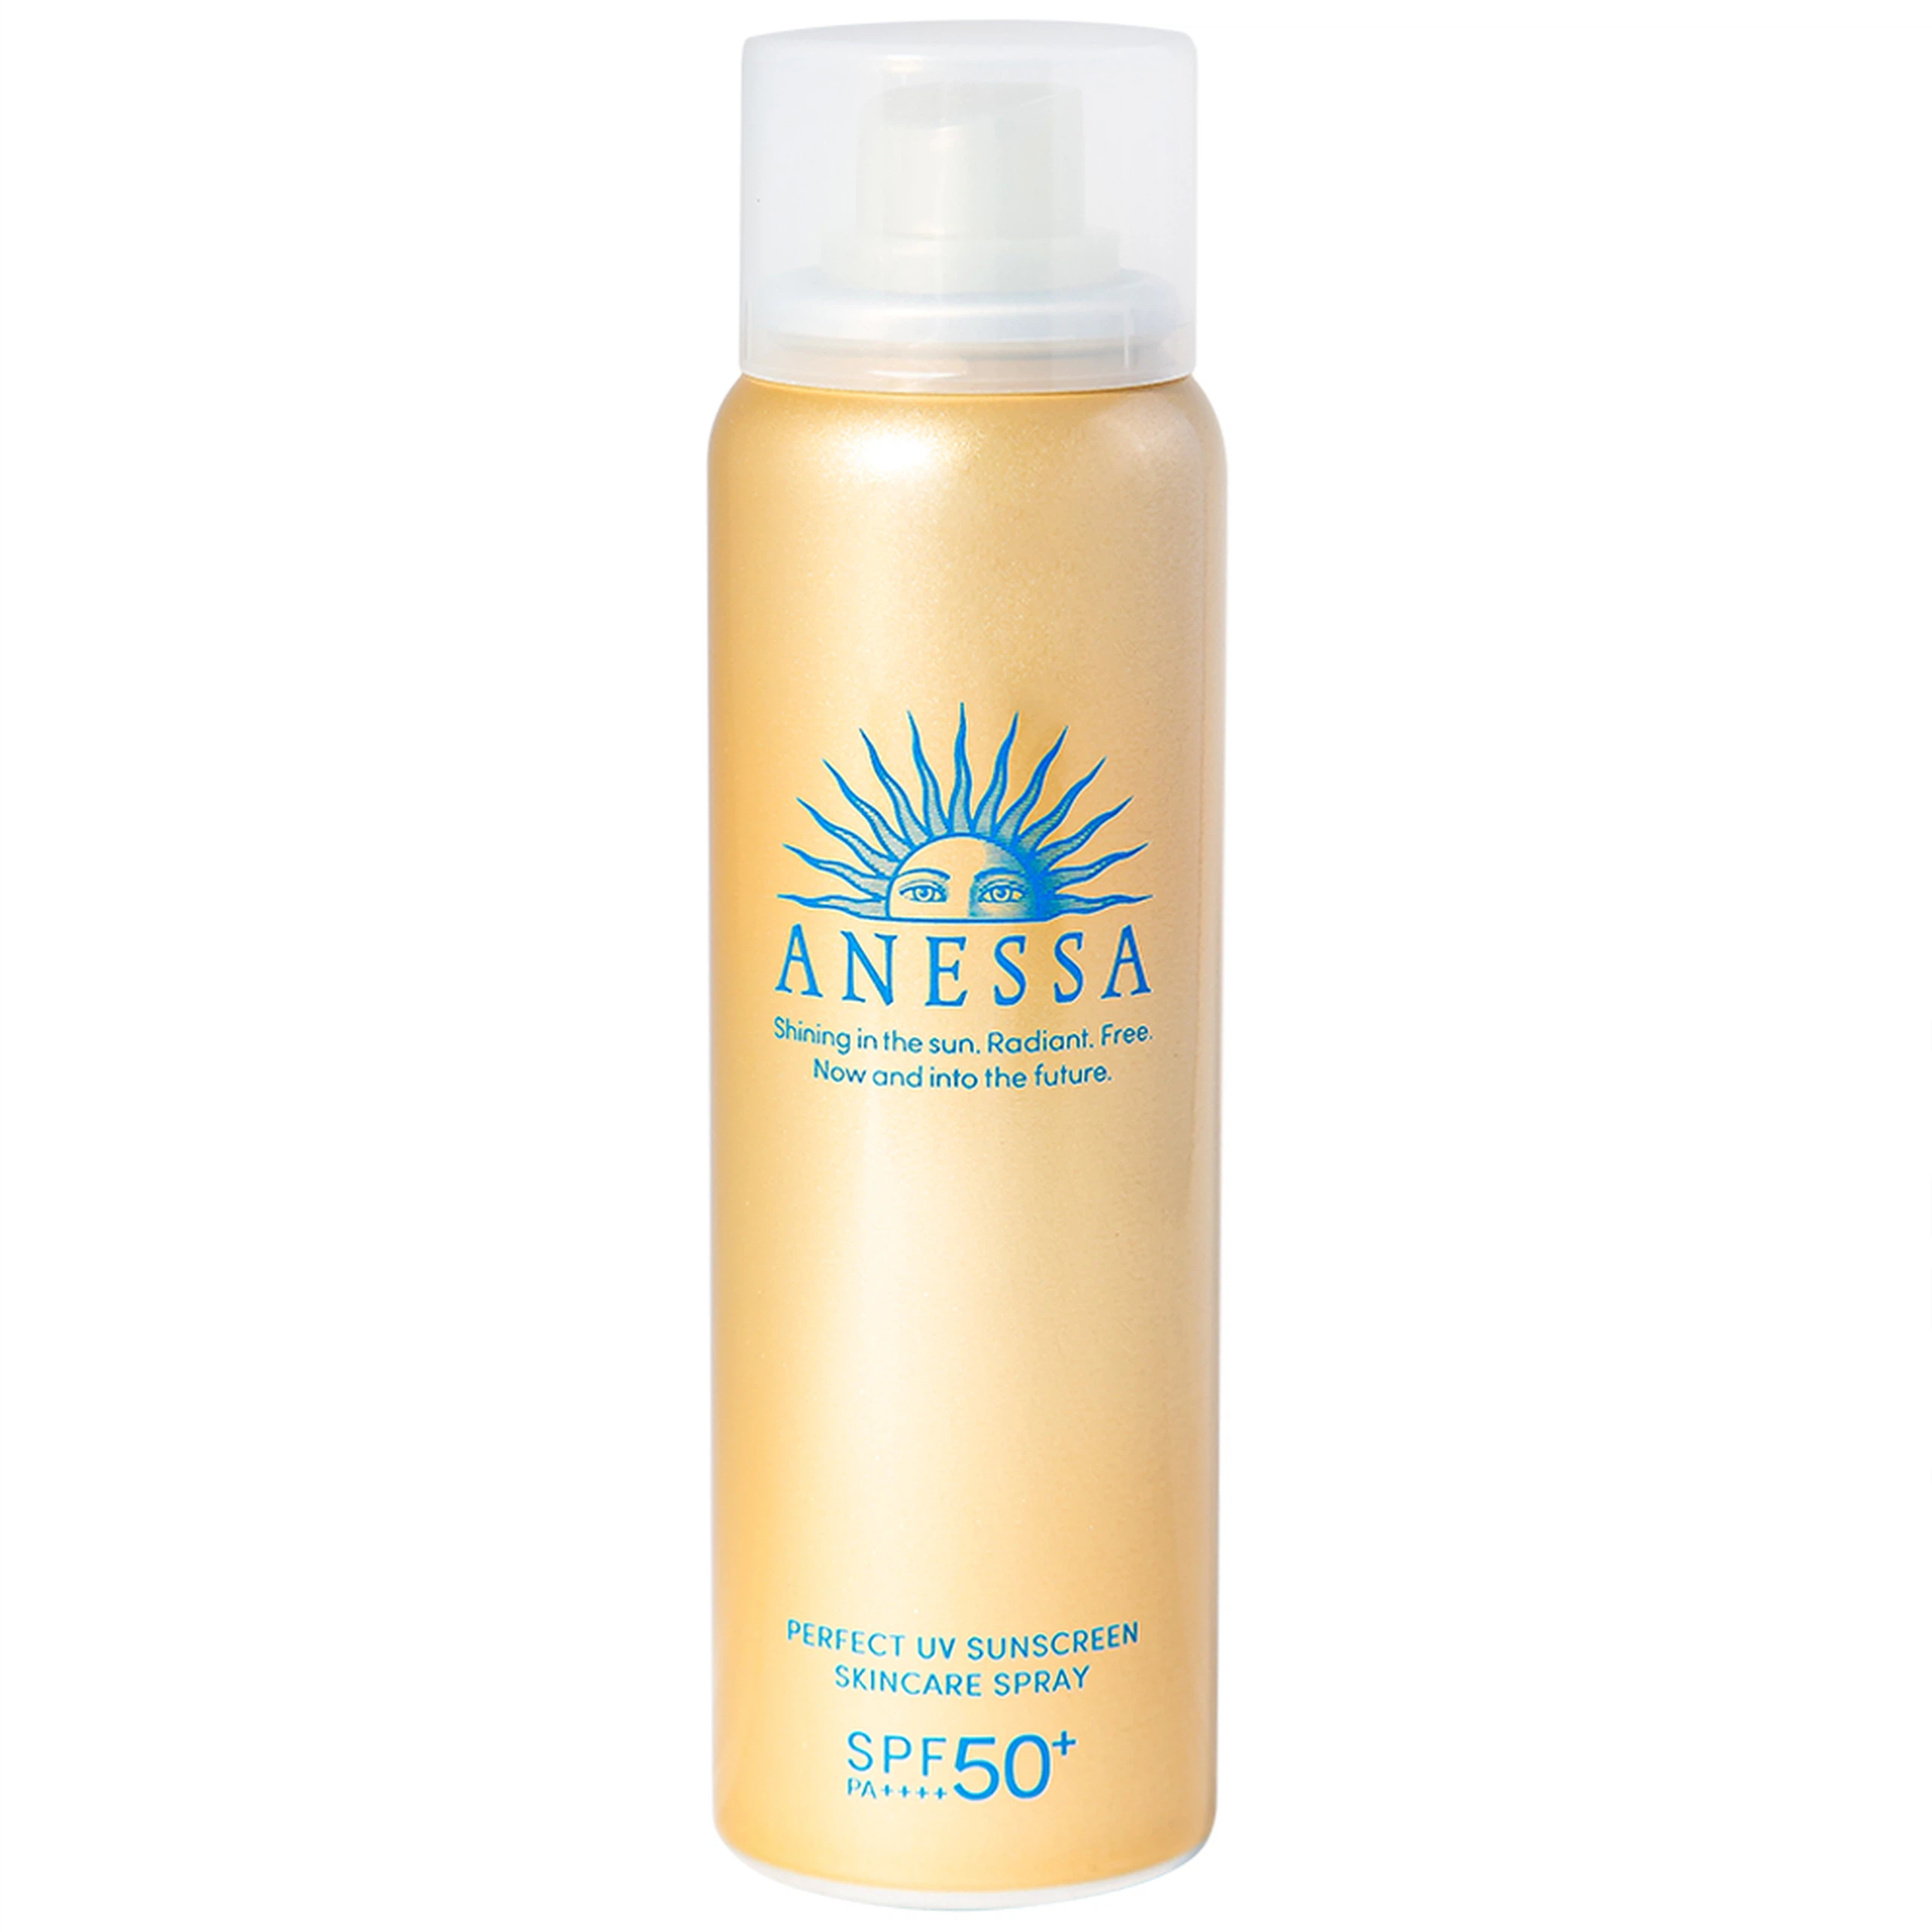 Xịt chống nắng dưỡng da đa năng Anessa Perfect UV Sunscreen SkinCare Spray N SPF50+ PA++++ (60g)